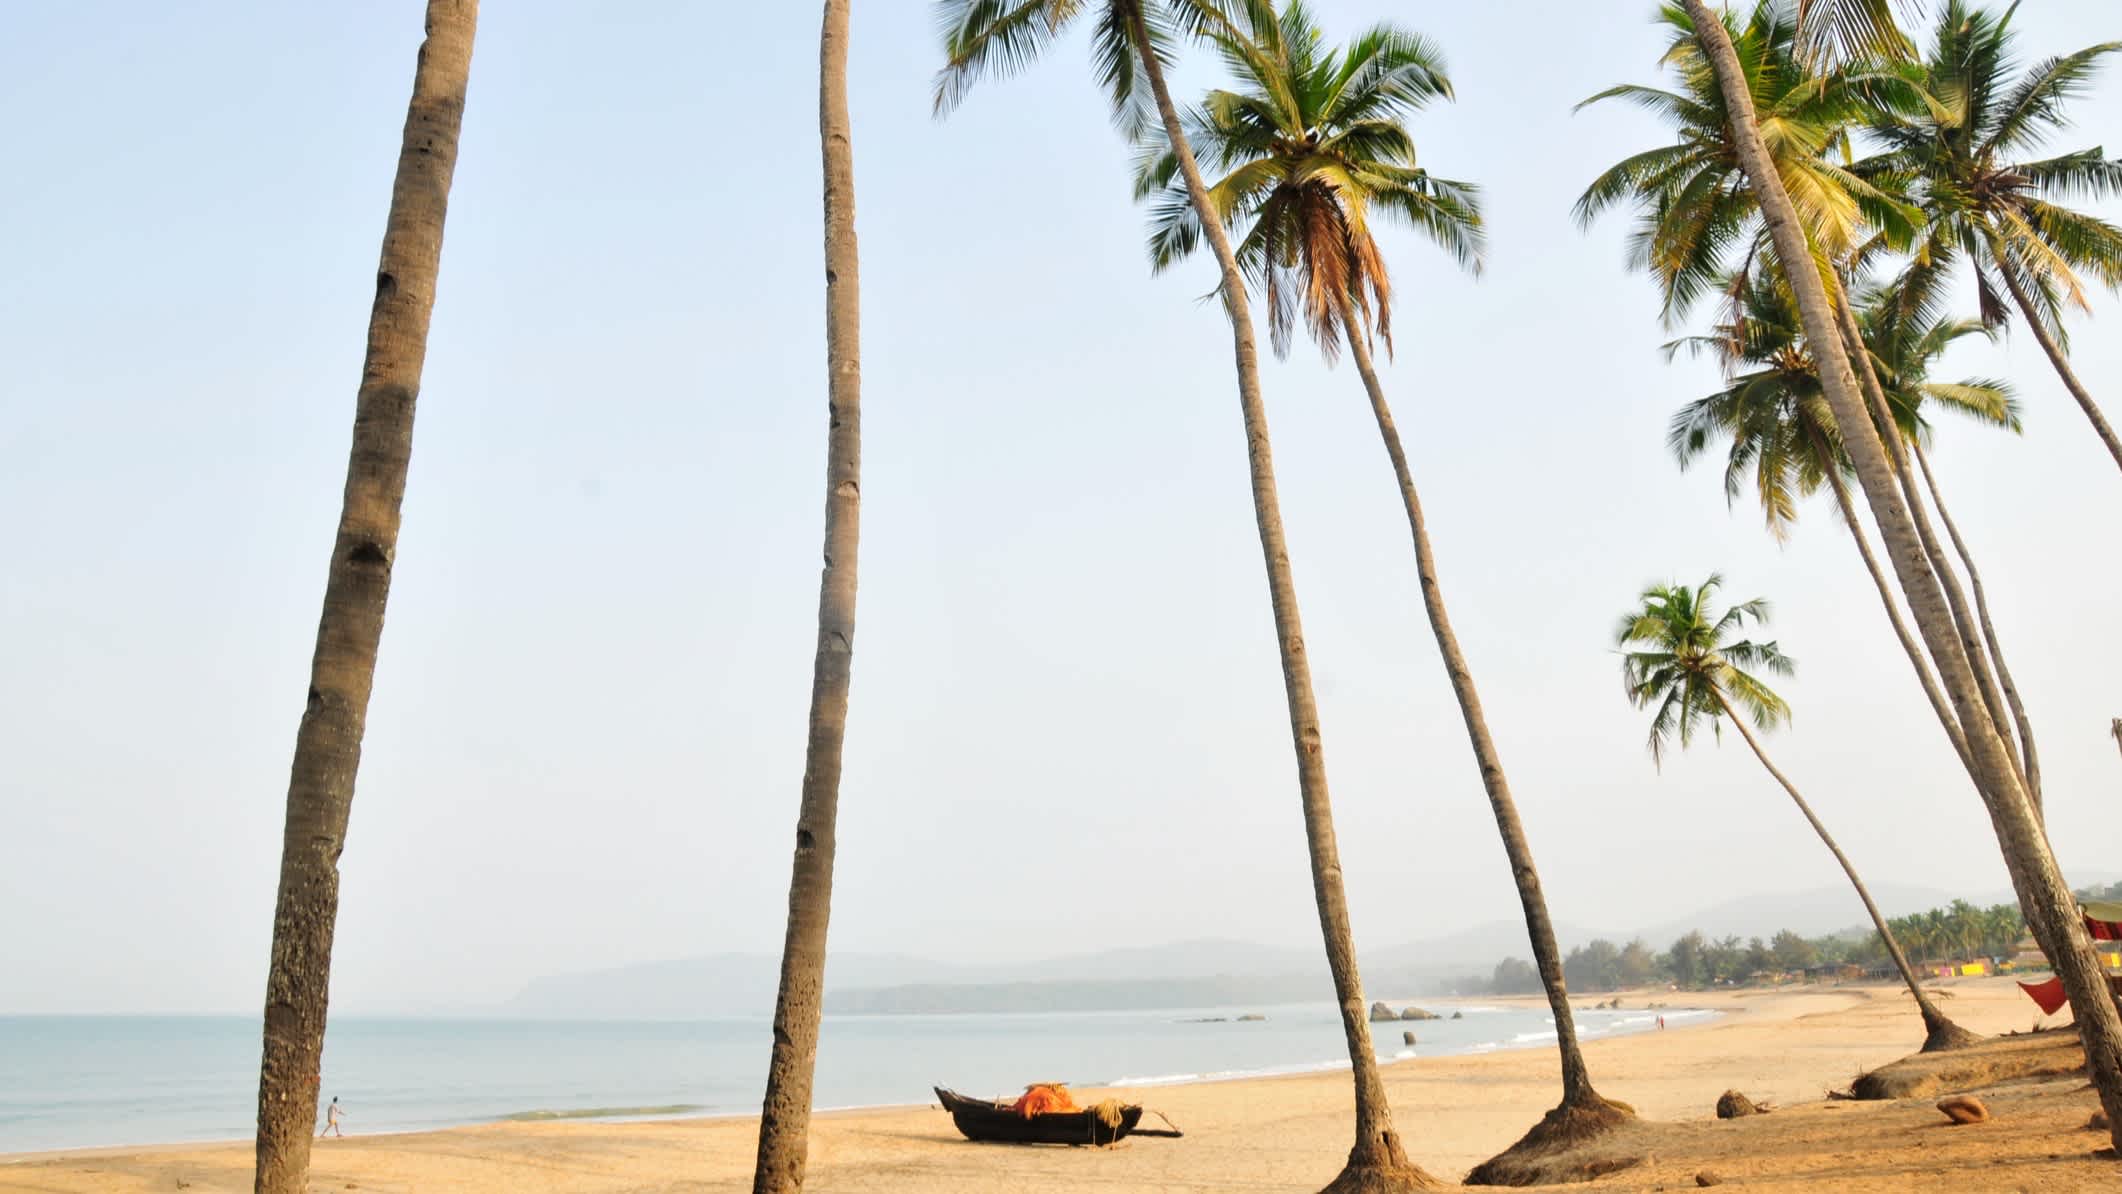 Palmen am Sandstrand Agonda Beach, Goa, Indien mit Aussicht auf das Meer sowie ein Boot am Strand.